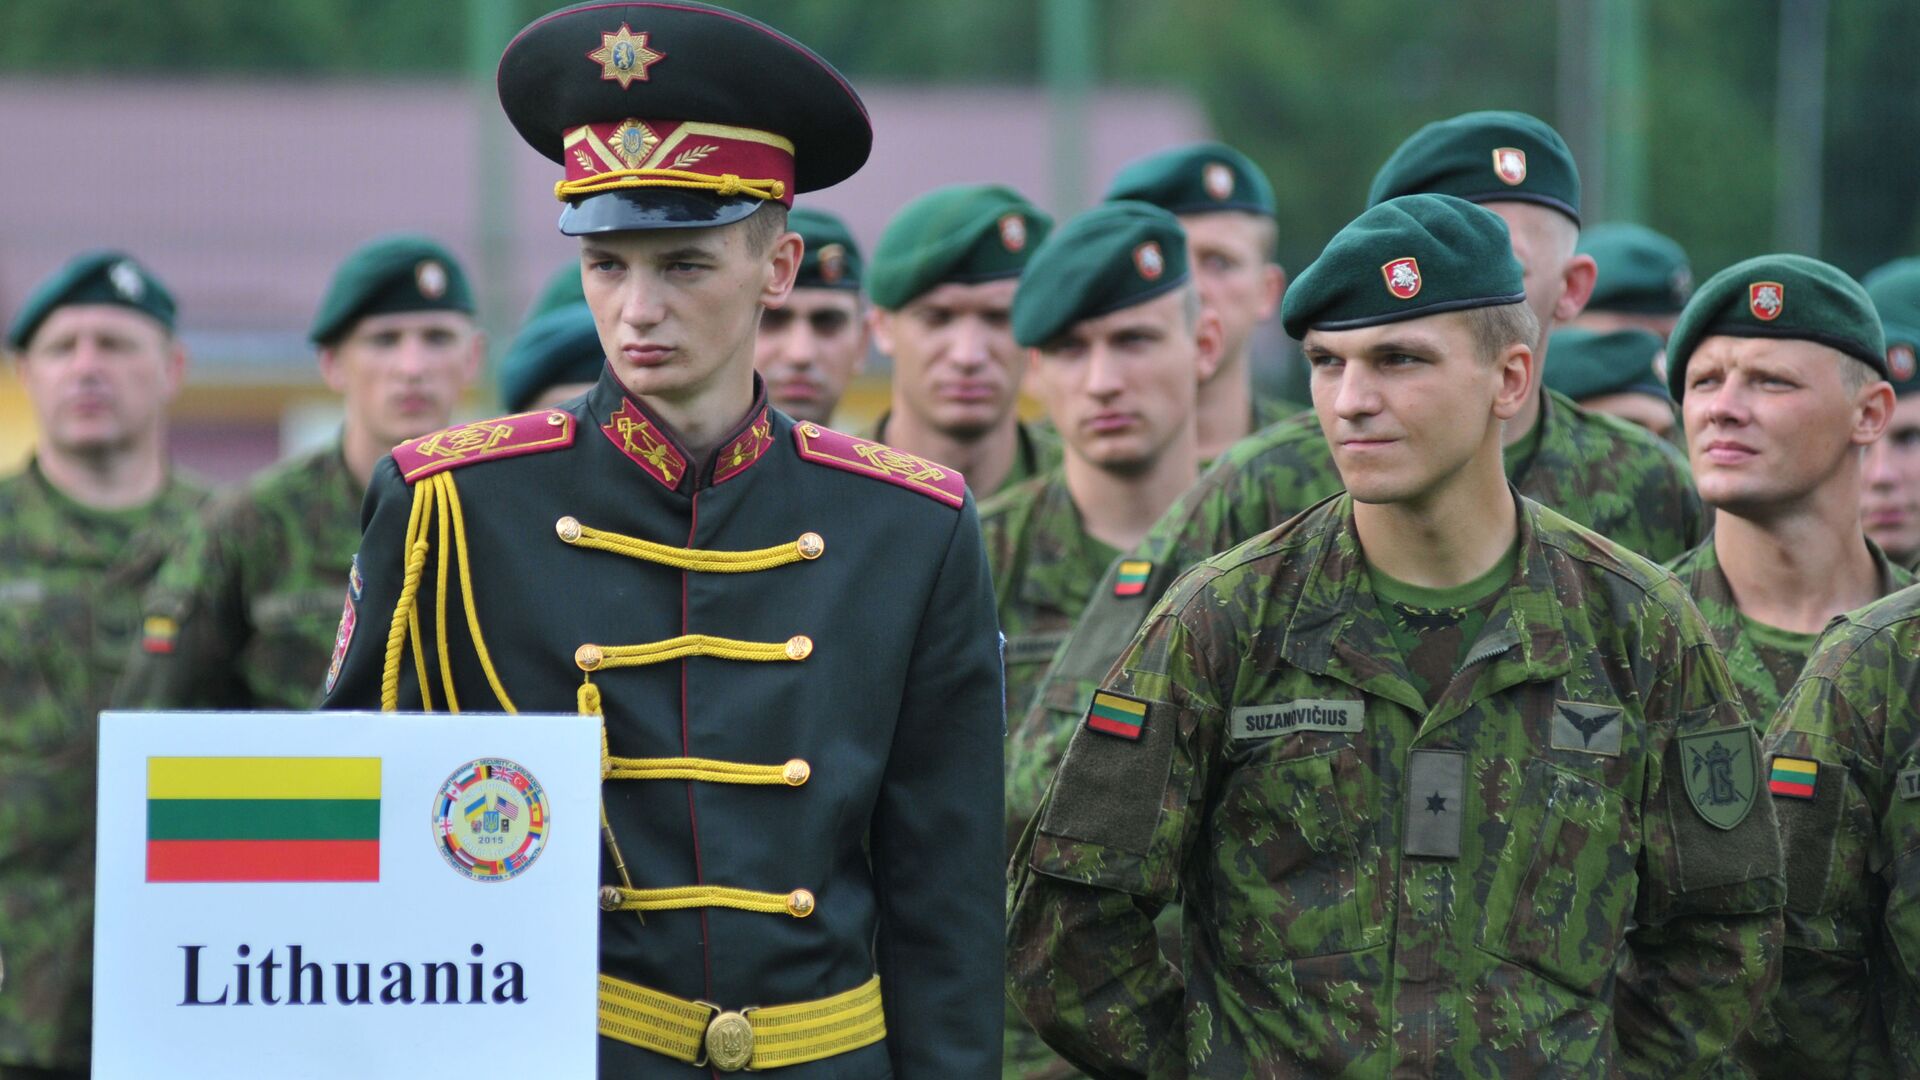 Литовские военнослужащие на церемонии открытия международных военных учений Rapid Trident 2015 в Украине  - Sputnik Latvija, 1920, 24.12.2021